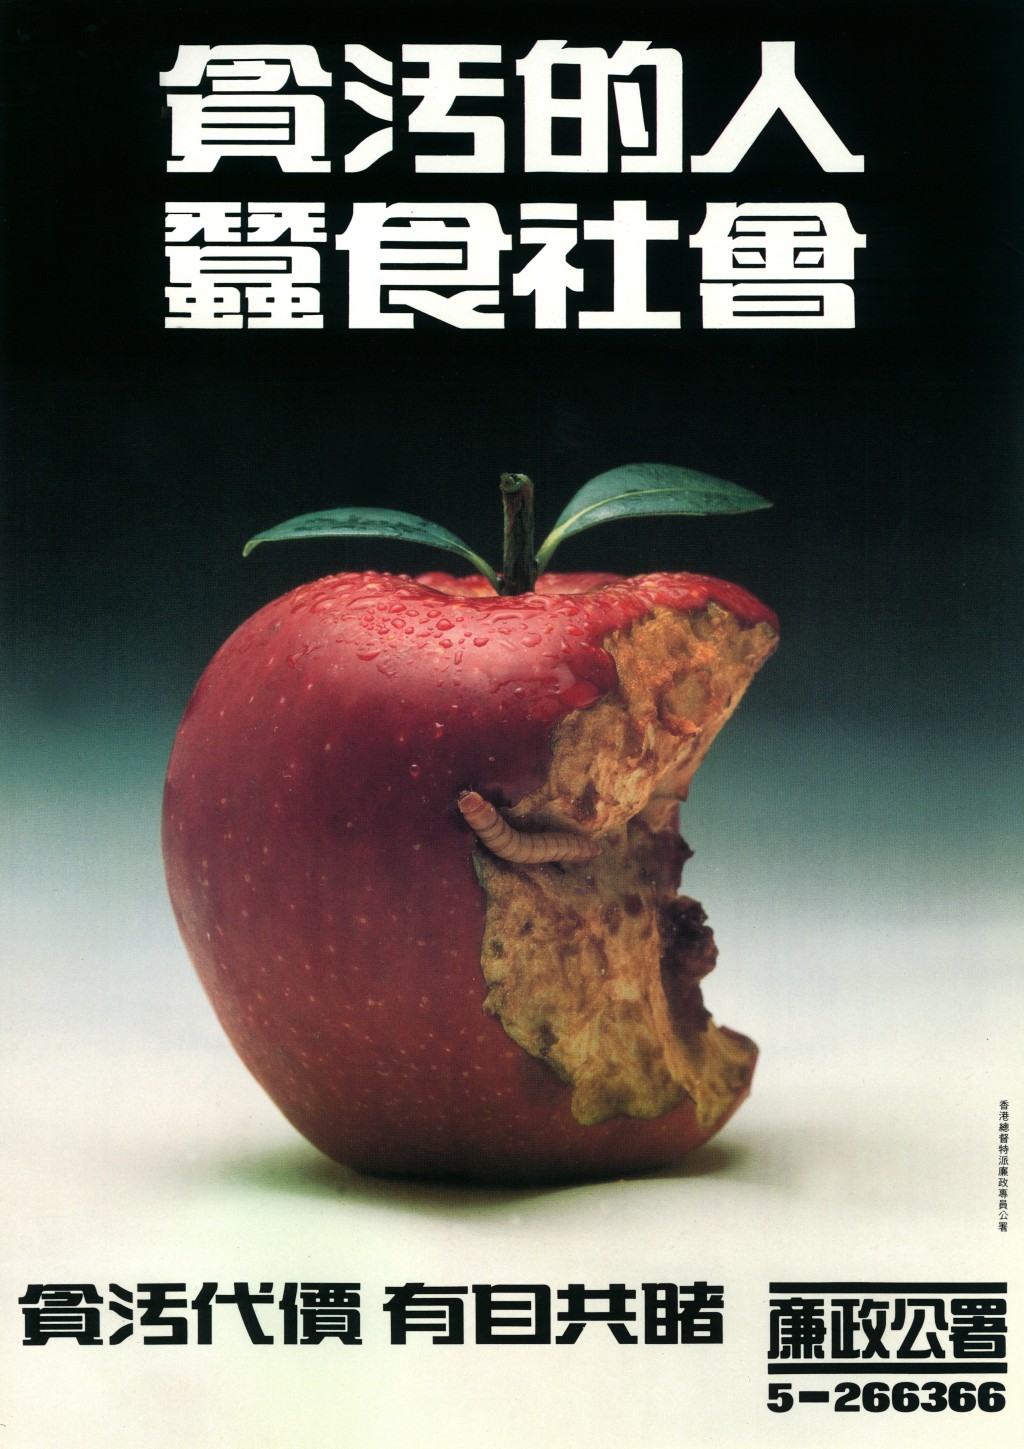 廉署廣告中的《爛蘋果》。廉署提供